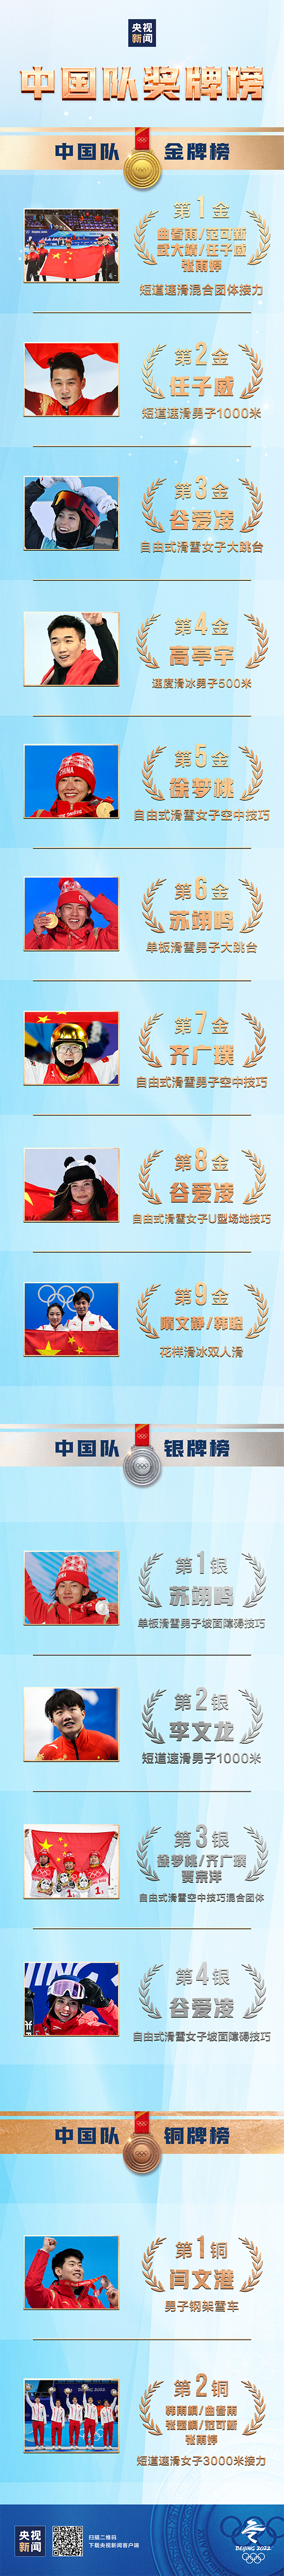 国内品牌女包排行榜_中国队位列奖牌榜第三位!金牌数、奖牌数均创历史最好成绩